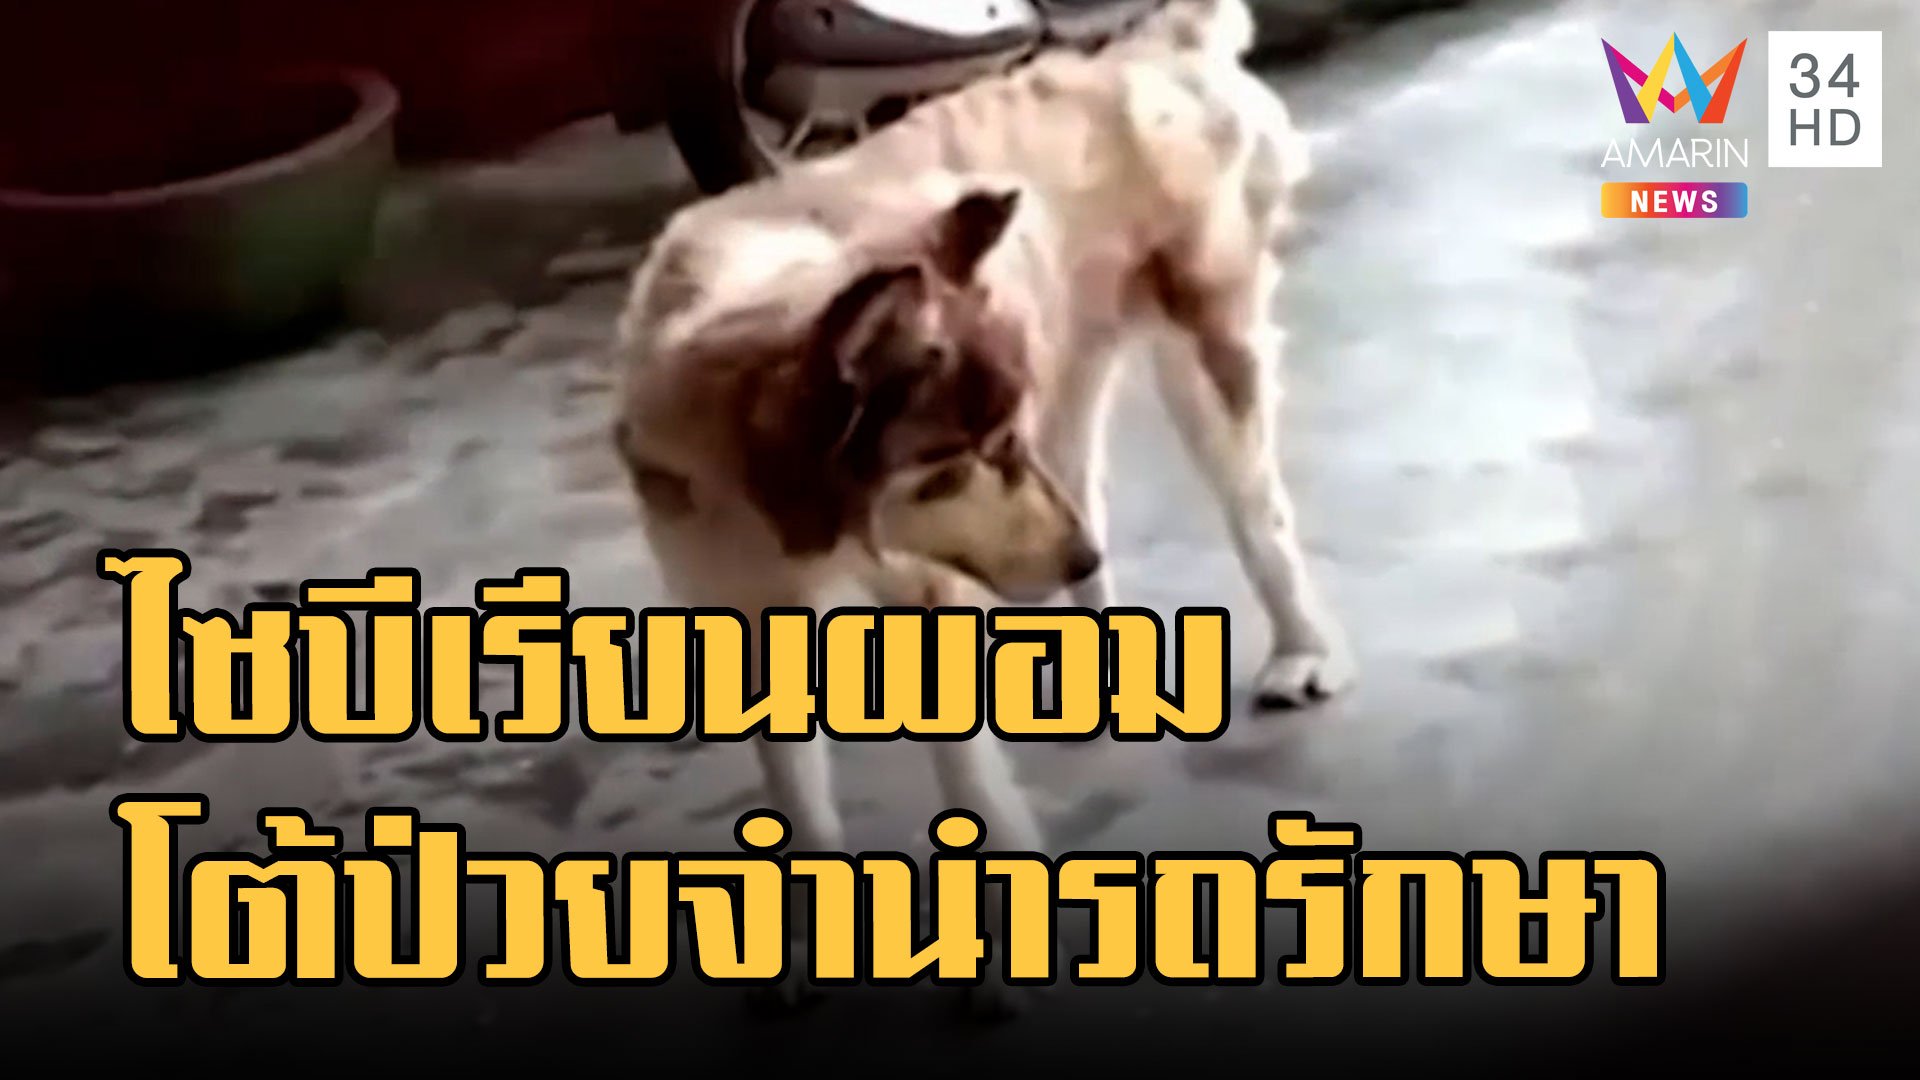 ดราม่าหมาไซบีเรียนหนังหุ้มกระดูก เจ้าของโต้หมาป่วยจำนำรถรักษา | ข่าวเที่ยงอมรินทร์ | 13 ก.ย. 65 | AMARIN TVHD34